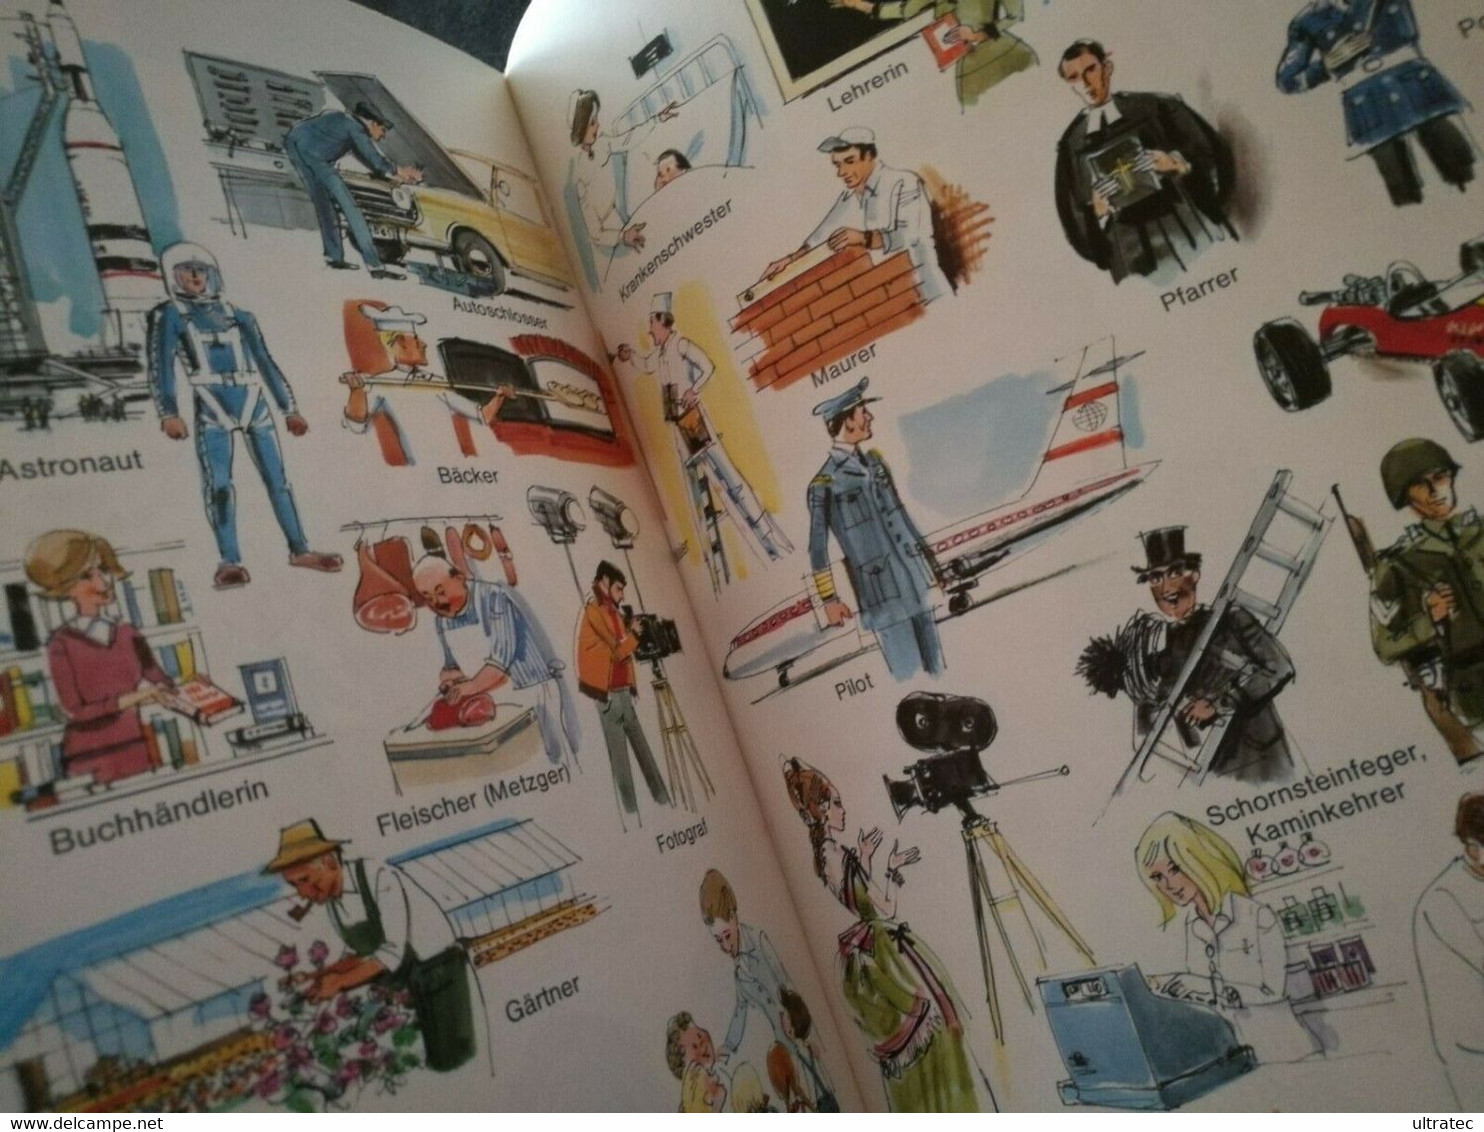 «Mein Buntes Bilderwörterbuch» Von Horst Lemke 70er Jahre Antikes Kinderbuch - Adventure